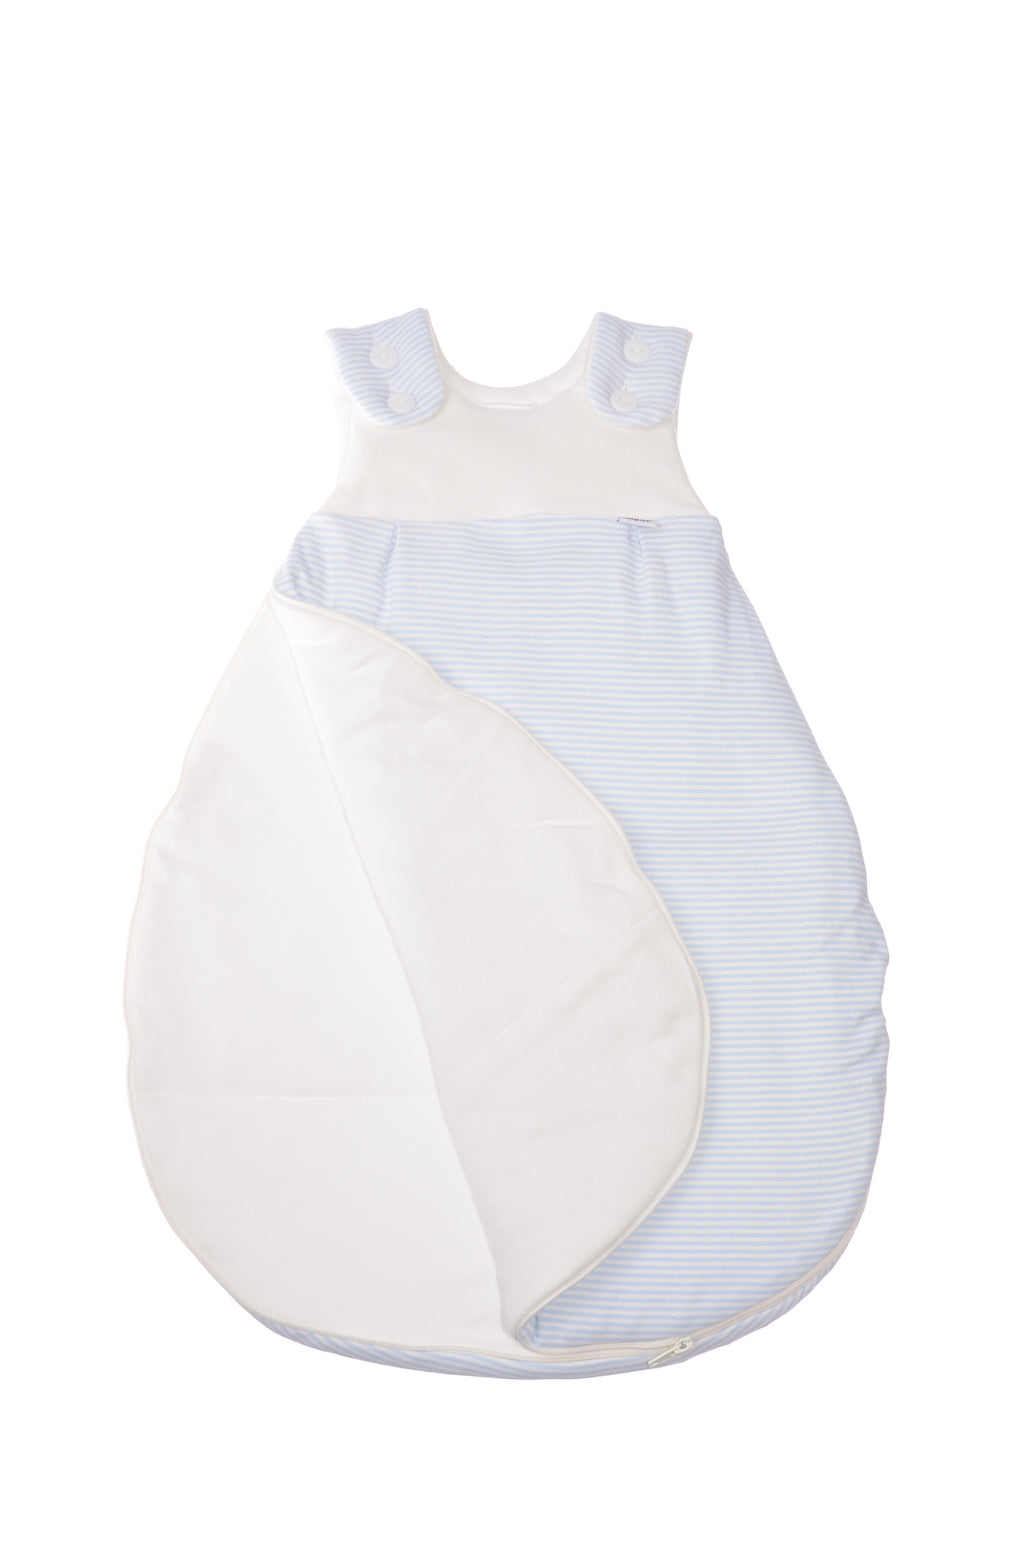 Schlafsack für Babys in unterschiedlichen Längen mit Knöpfen und Reißverschluss an der Seite. Design:  hellblaue Streifen